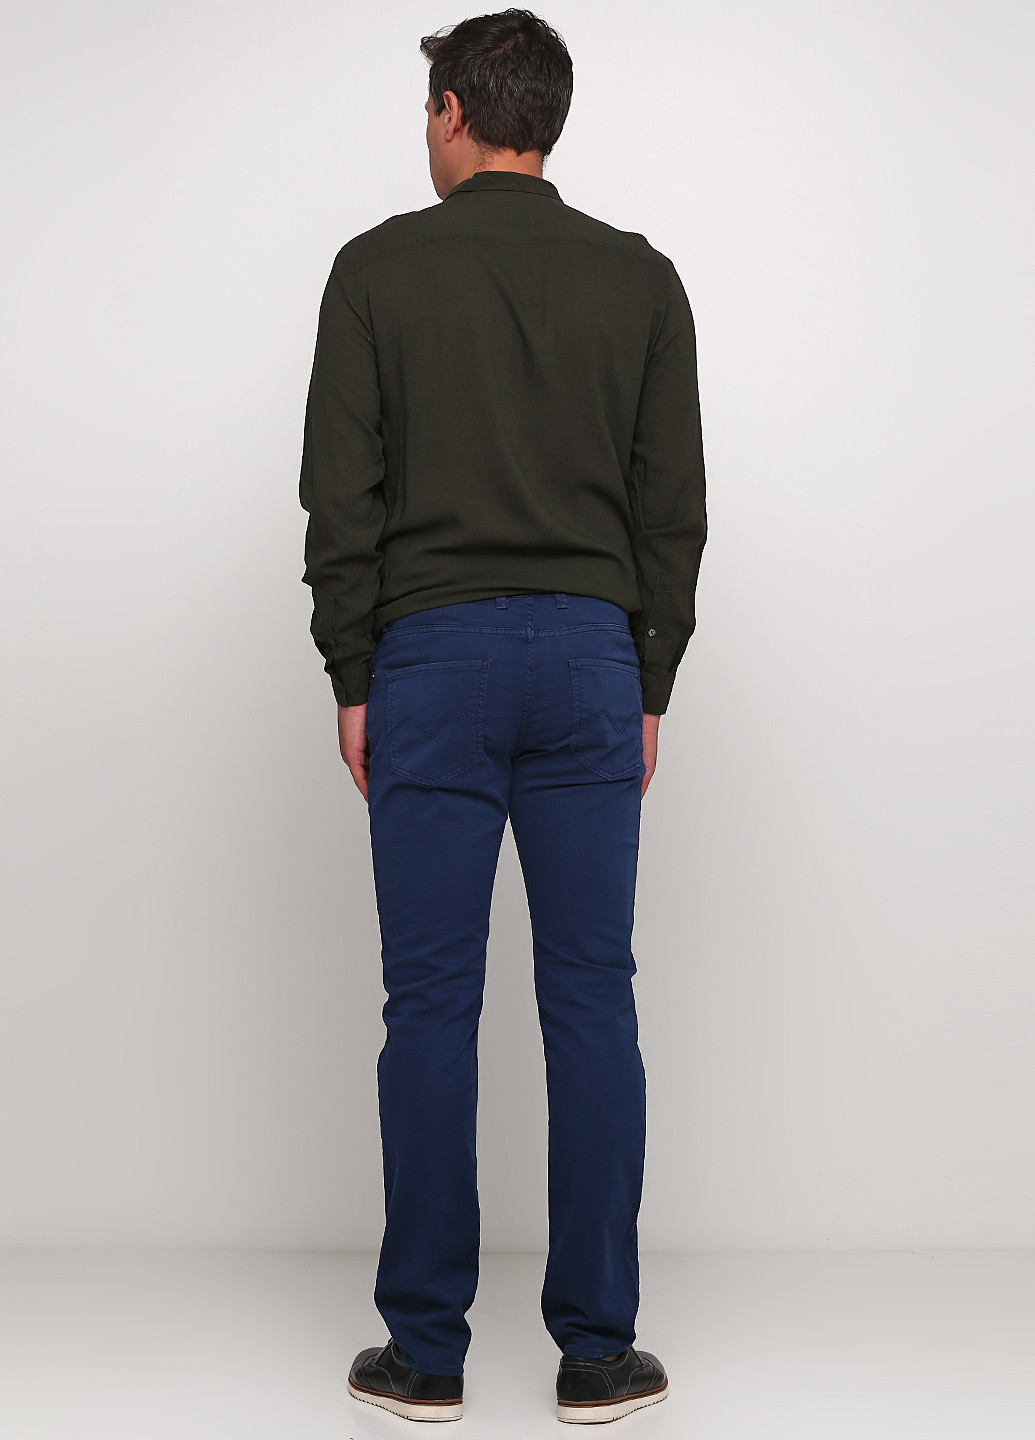 Индиго демисезонные прямые джинсы Madoc Jeans